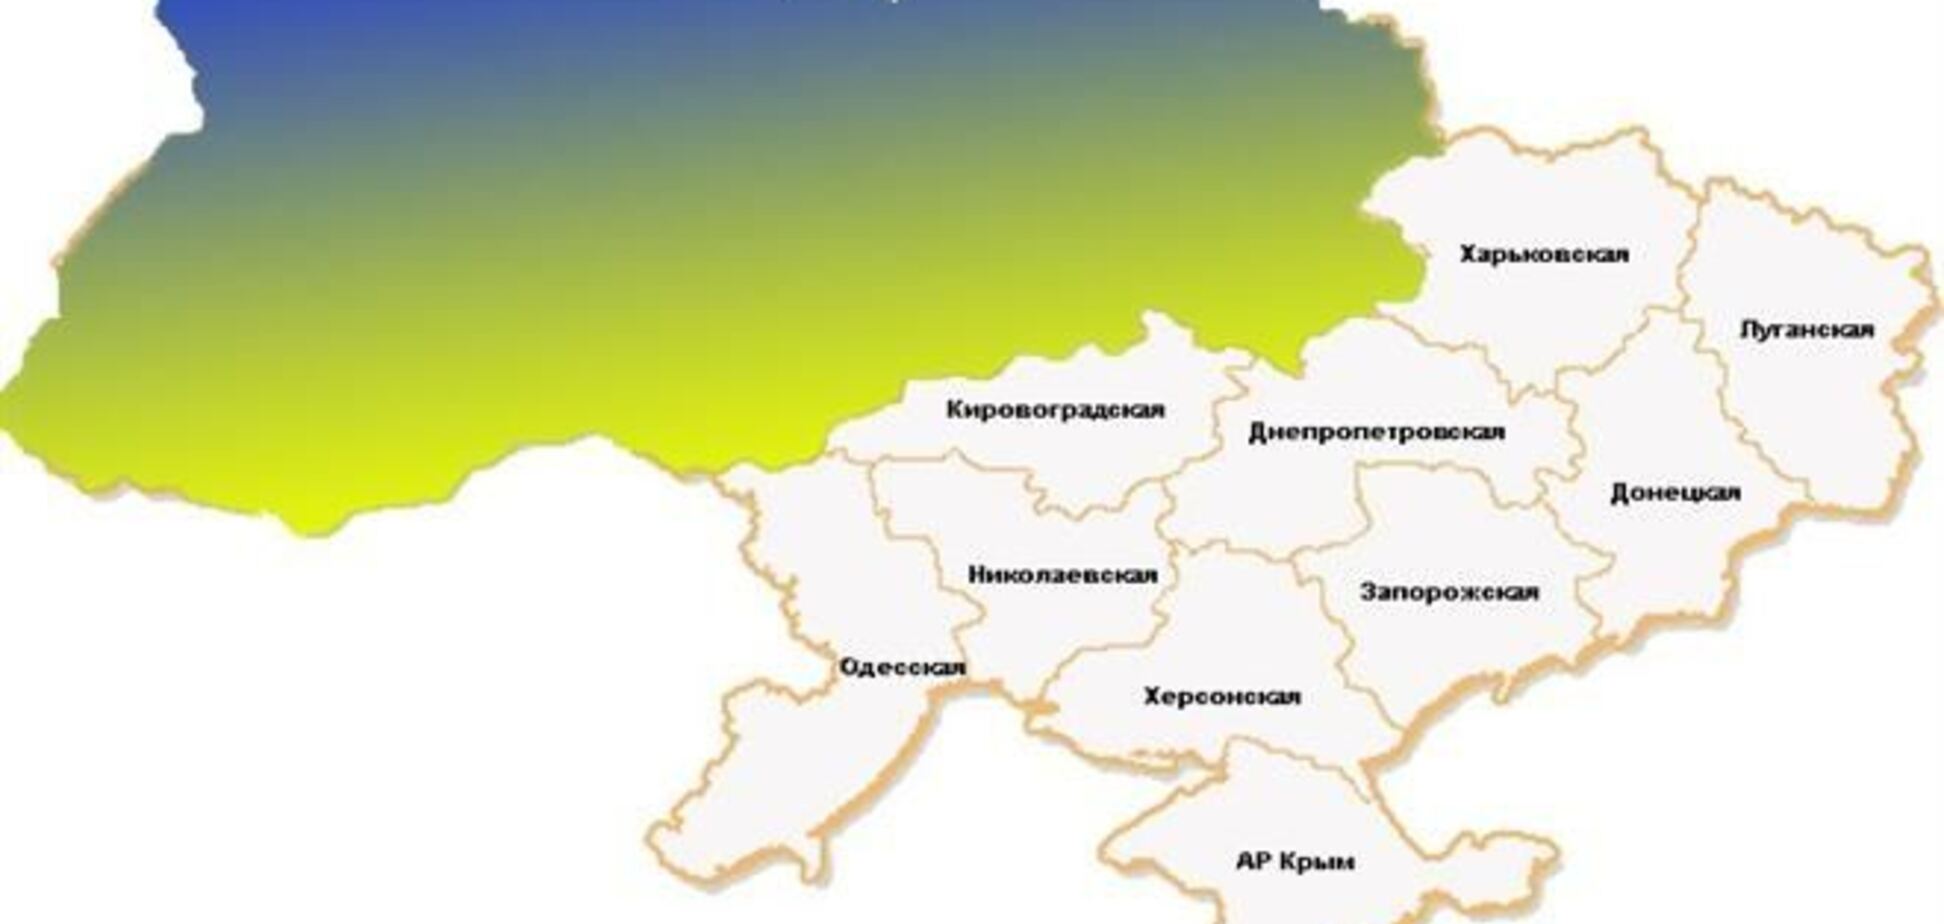 Территория протеста в Украине расширилась до 8 регионов